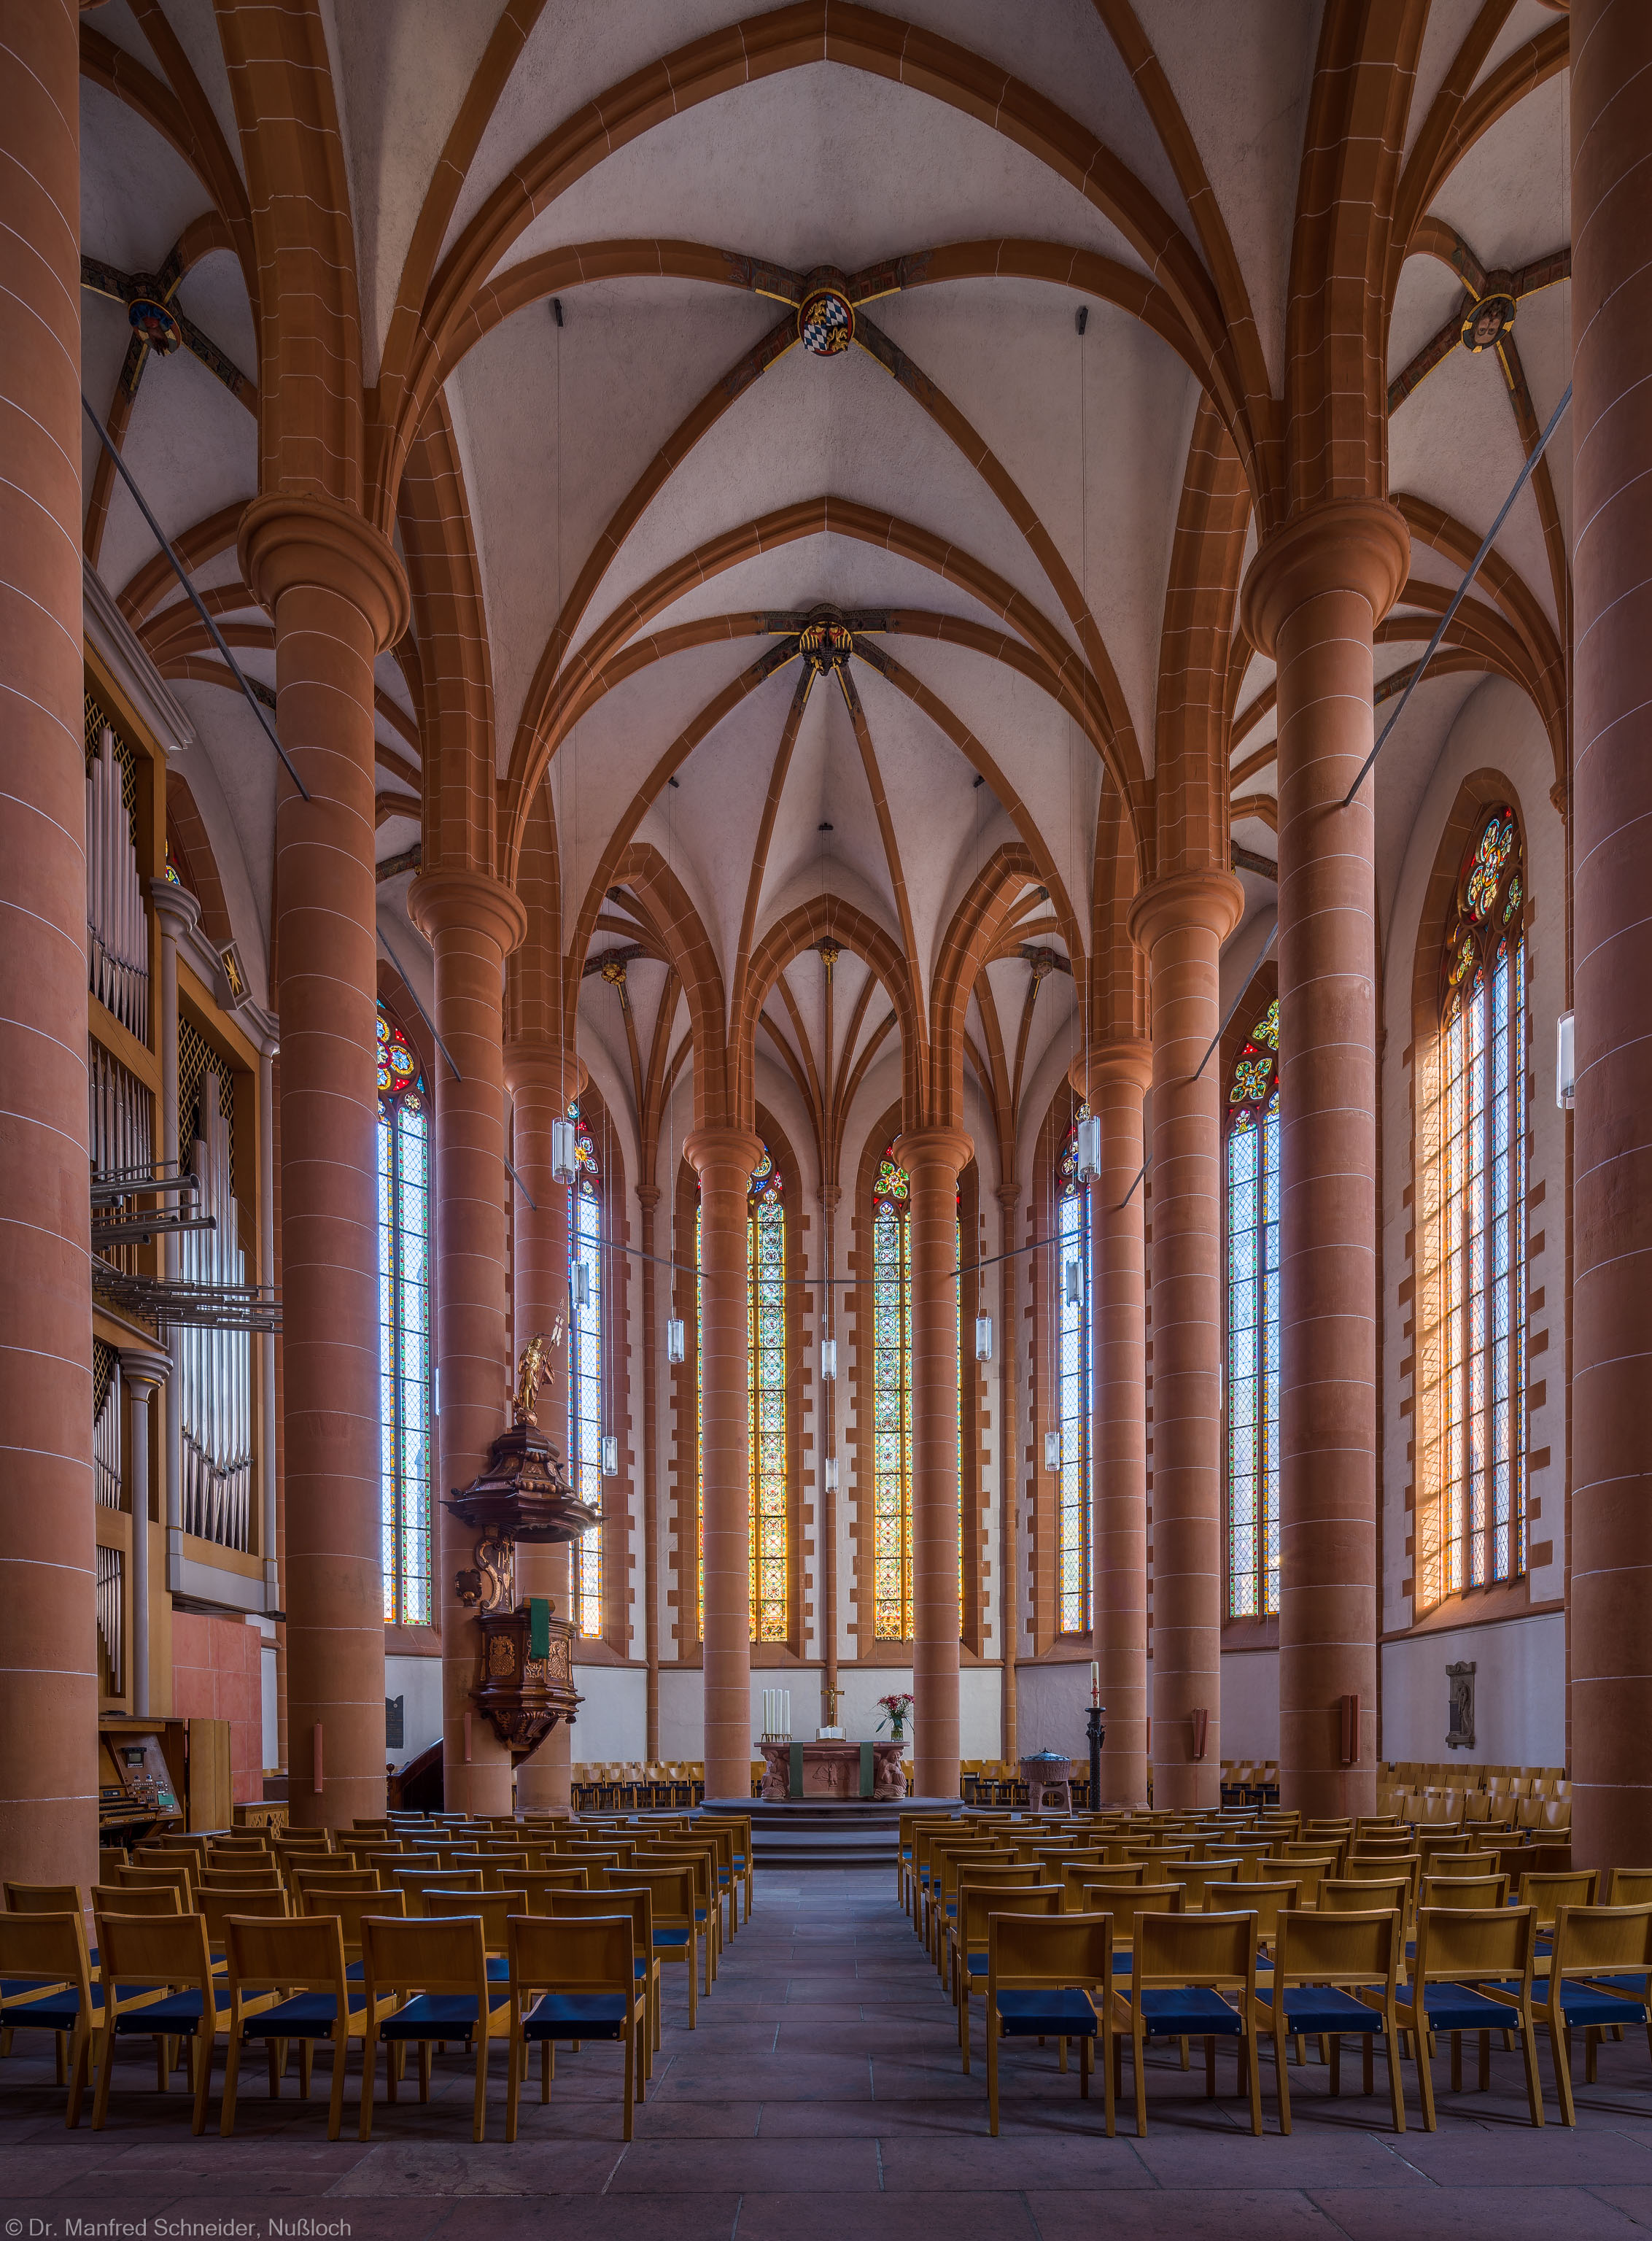 Heidelberg - Heiliggeistkirche - Chor - Blick in den Chor mit Säulen, Gewölbe, Orgel, Kanzel und Altar (aufgenommen im September 2014, am späten Nachmittag)